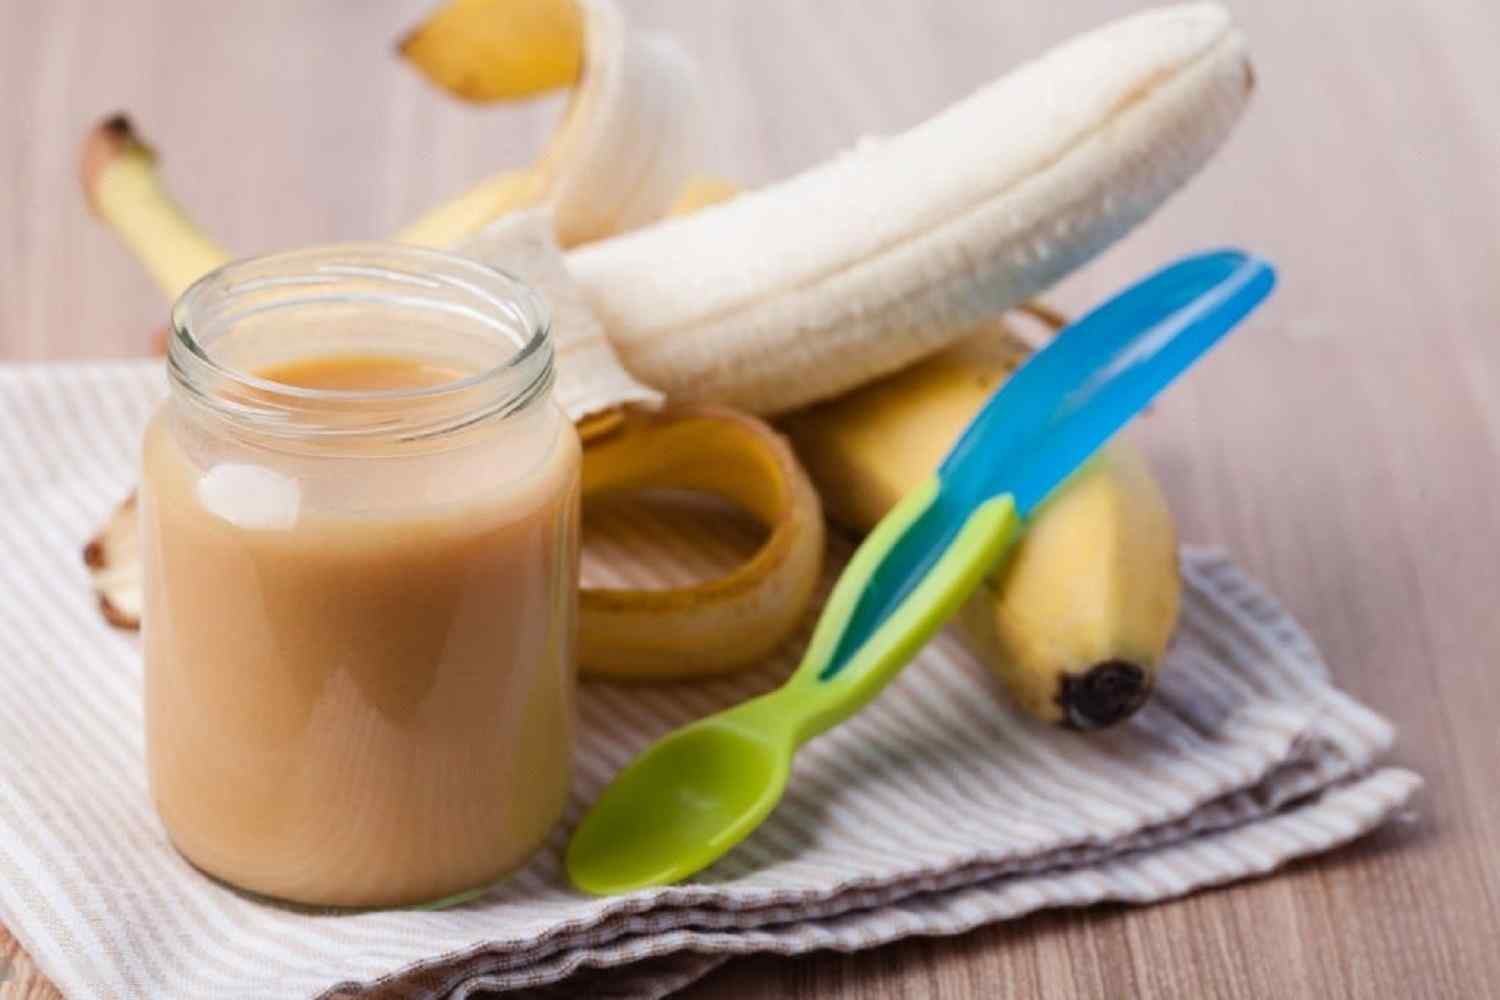 Banana and yogurt mash